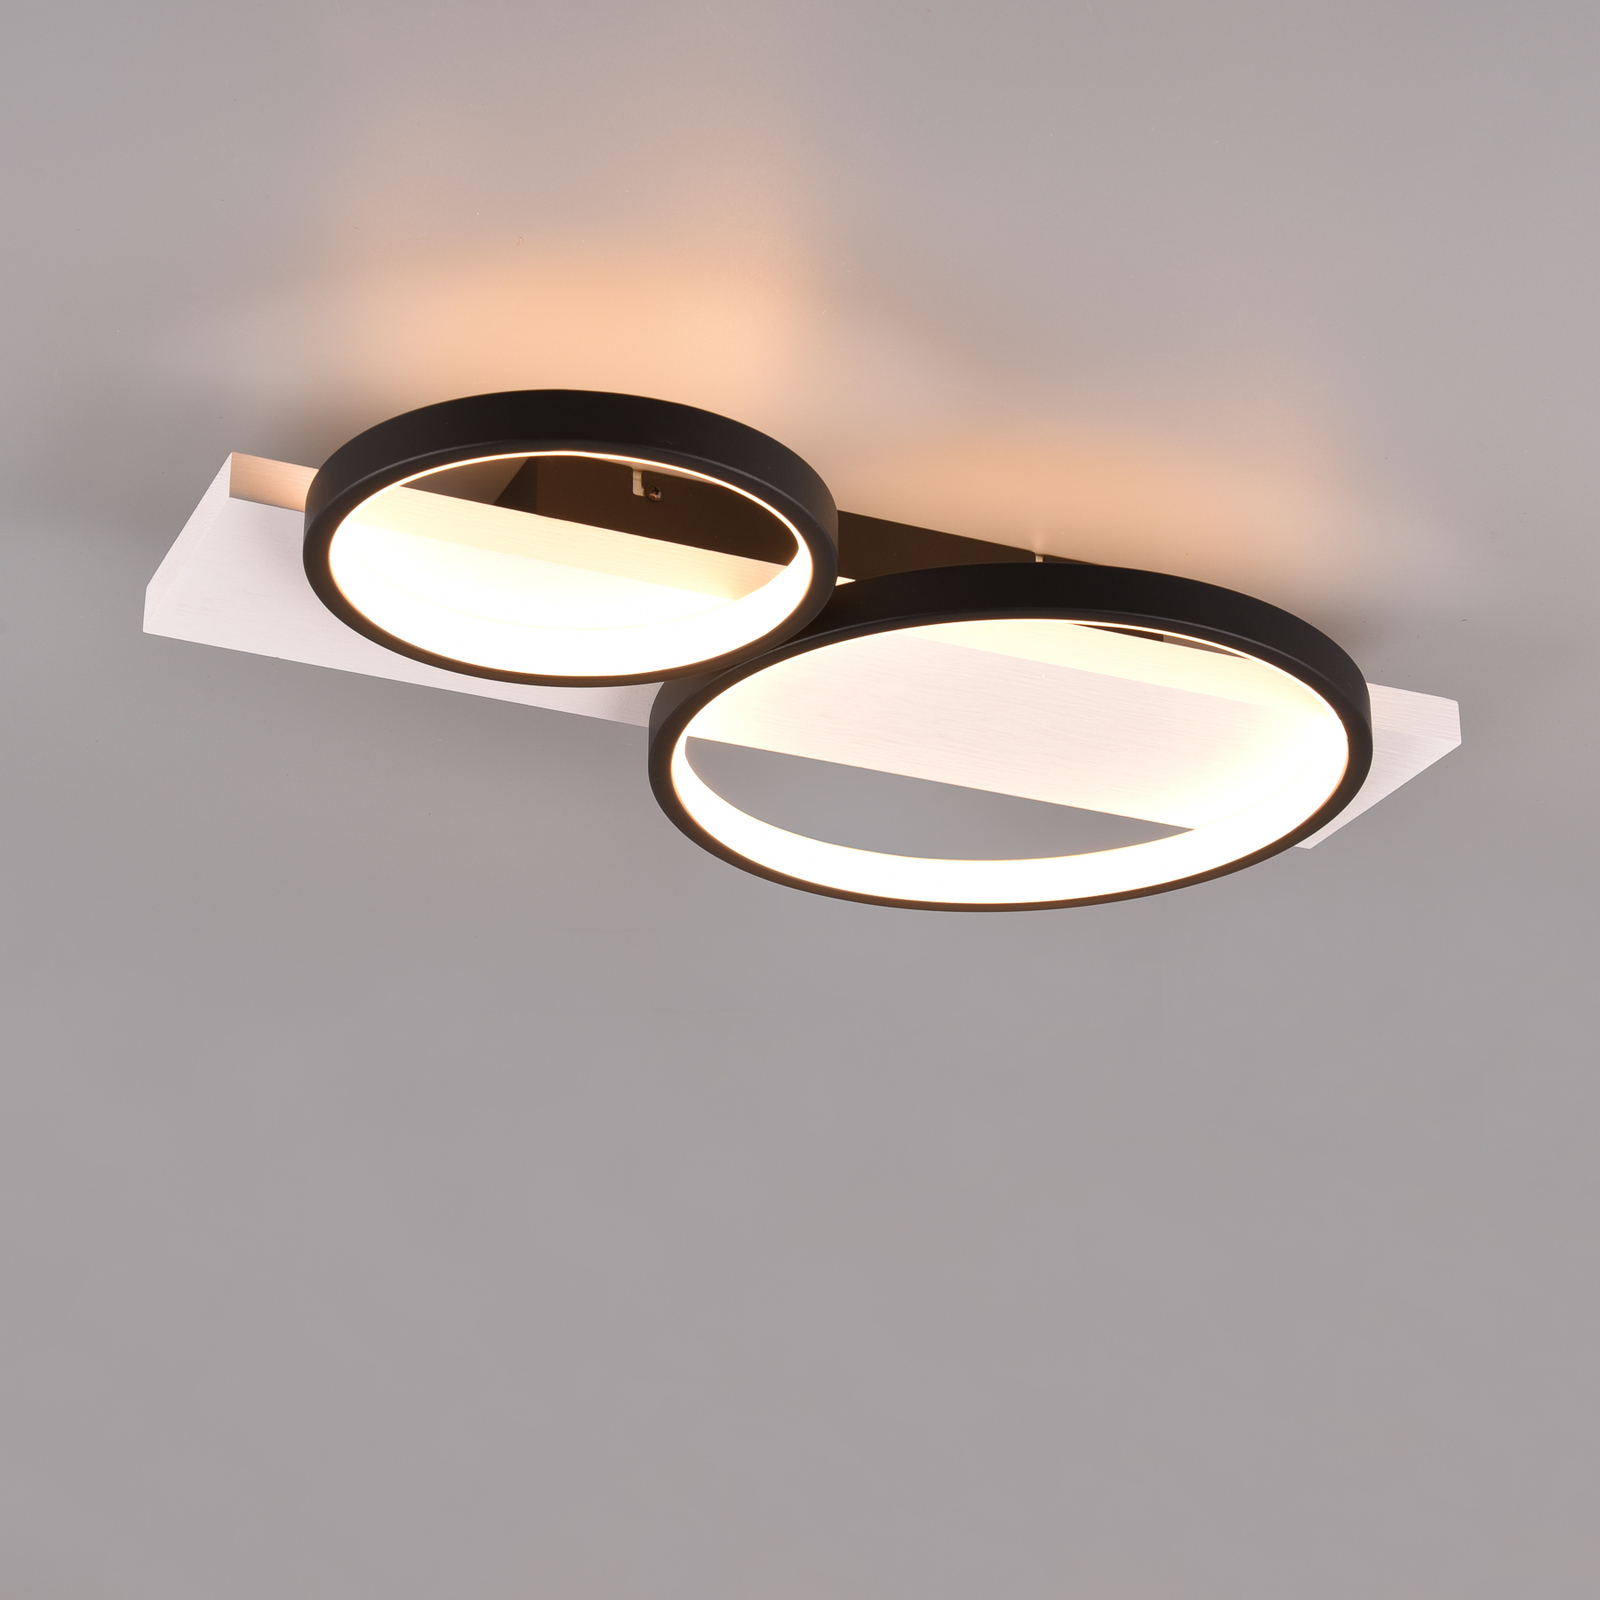 Medera LED ceiling light, 2-bulb, black